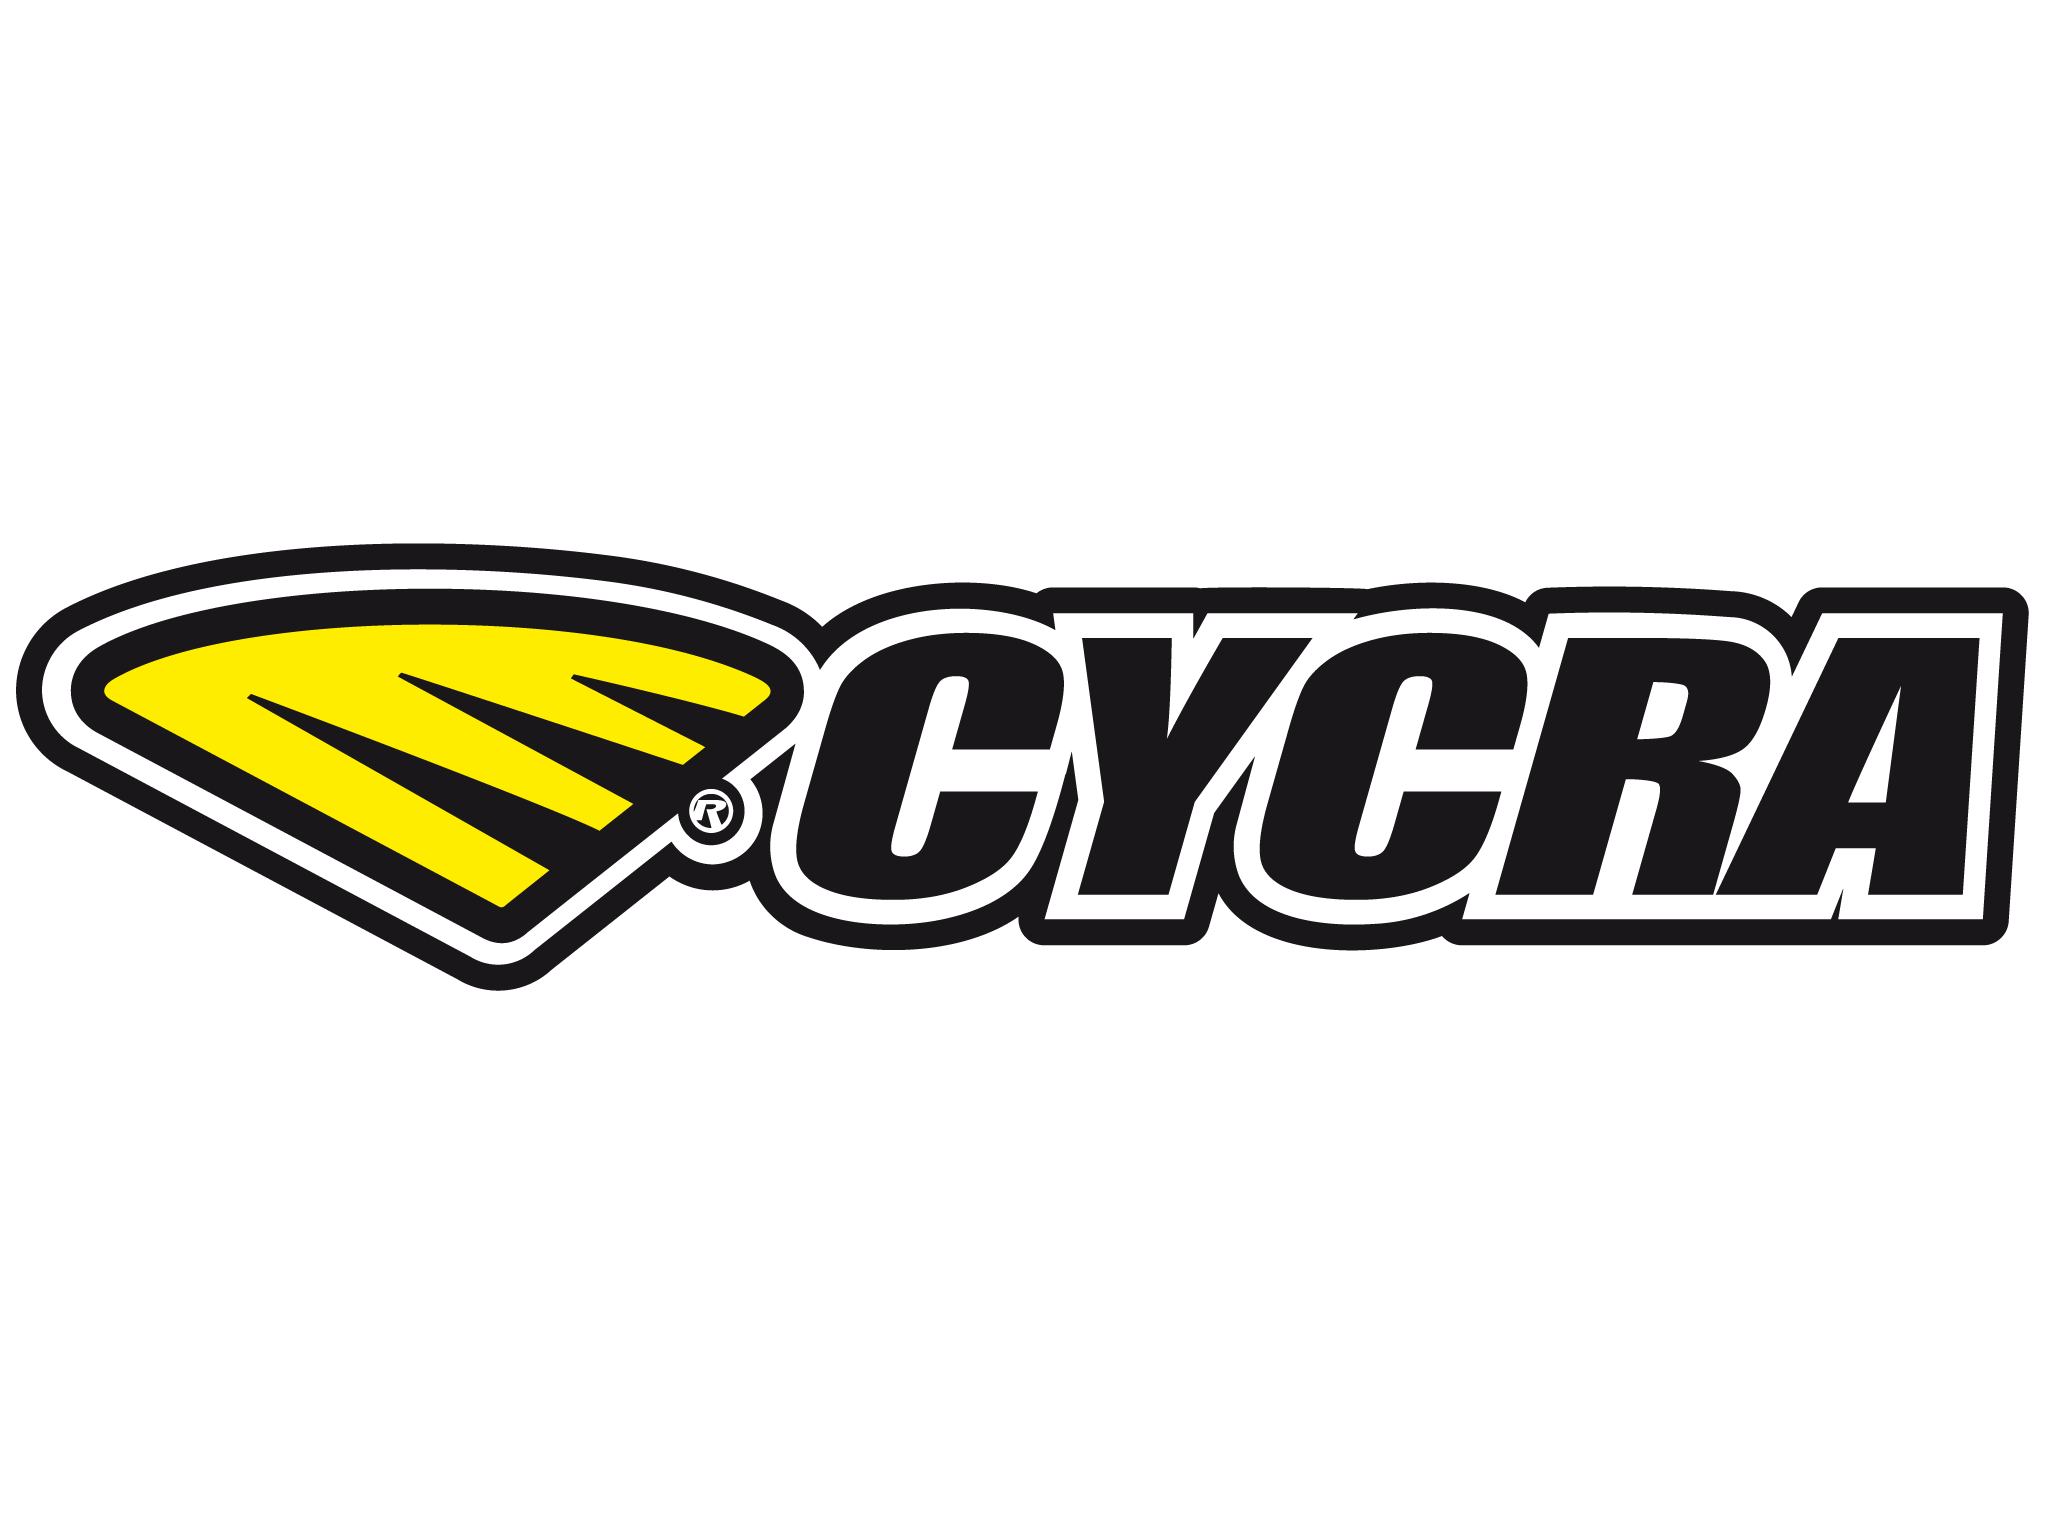 Cycra Logo - Blackbird Racing. Custom Number Plate model De Lux